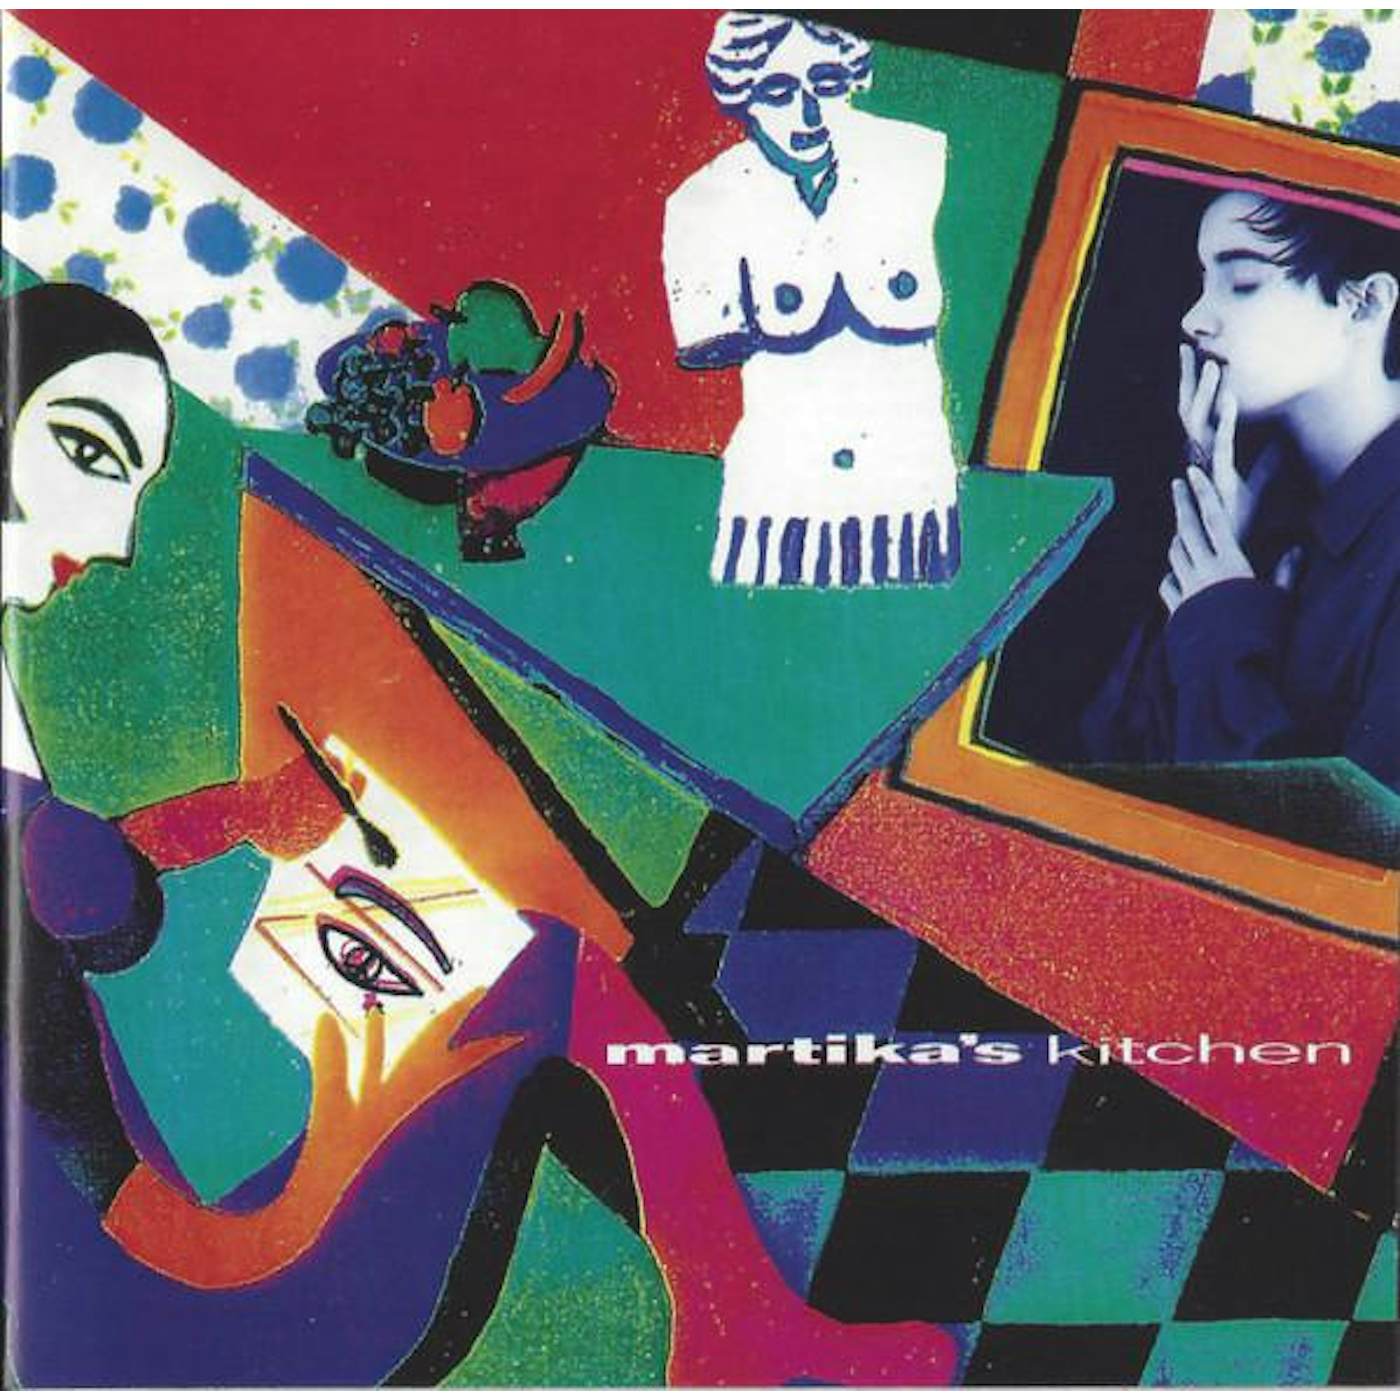 MARTIKA'S KITCHEN: REHEATED EDITION CD